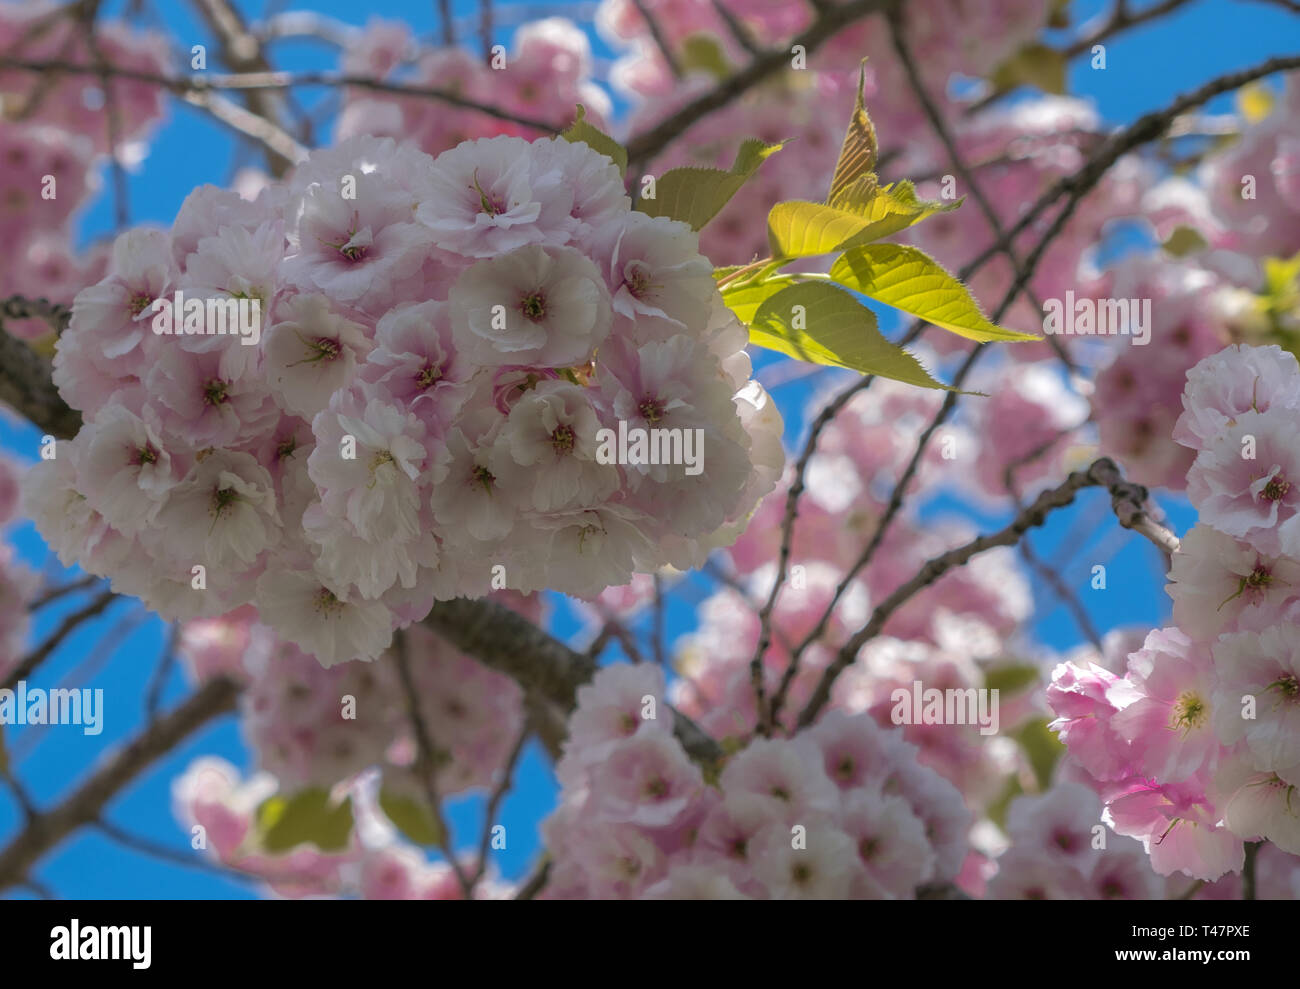 Rosa Kirschblüten hängen von einem Baum vor einem strahlend blauen Himmel. Soft Focus Hintergrund. Stockfoto